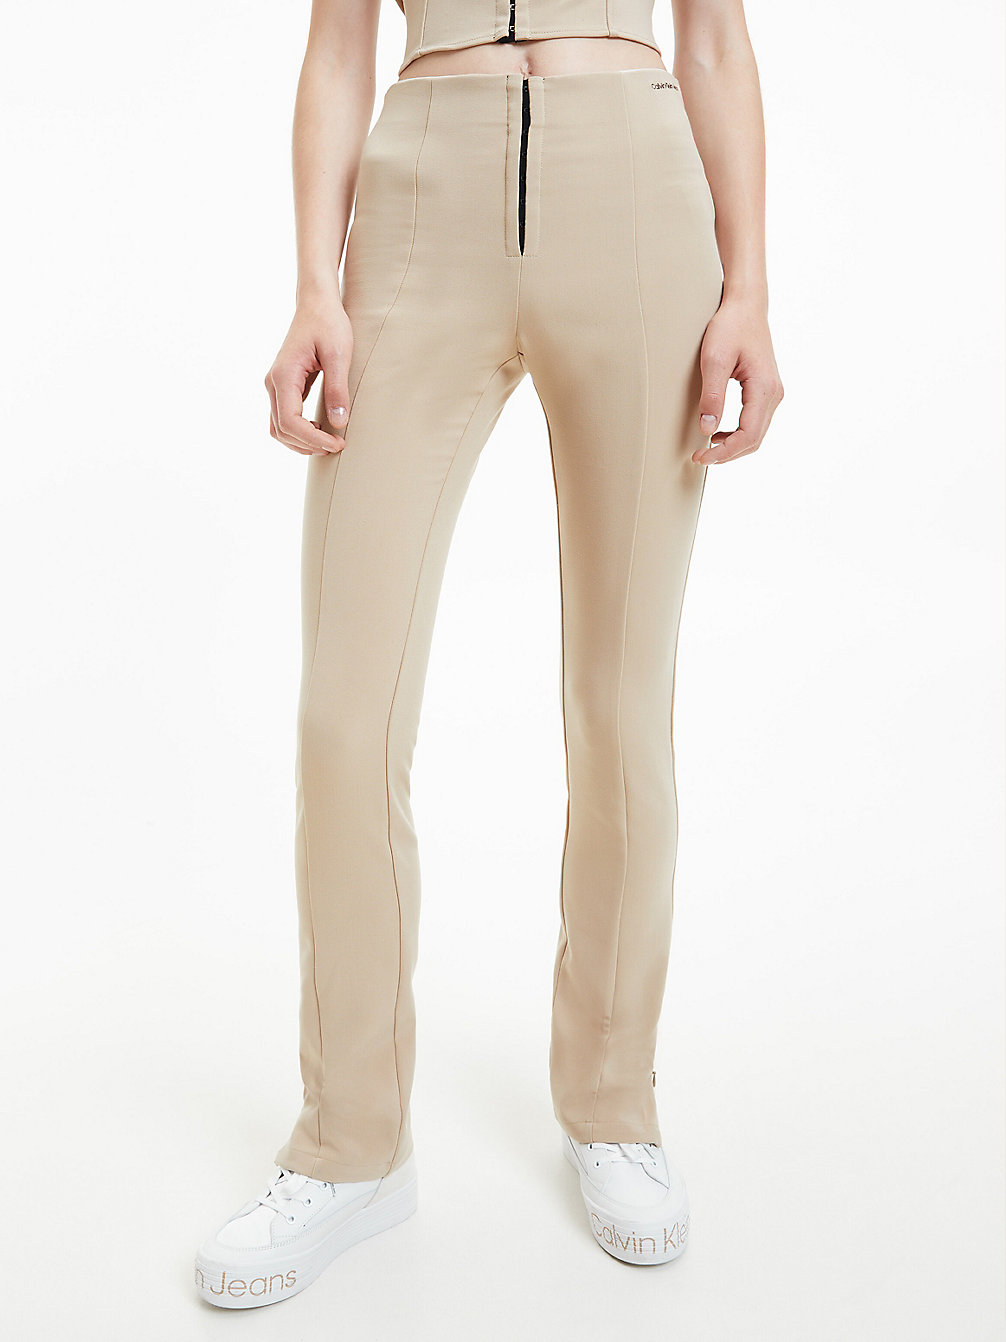 TRAVERTINE > Облегающие брюки высокой посадки > undefined Женщины - Calvin Klein